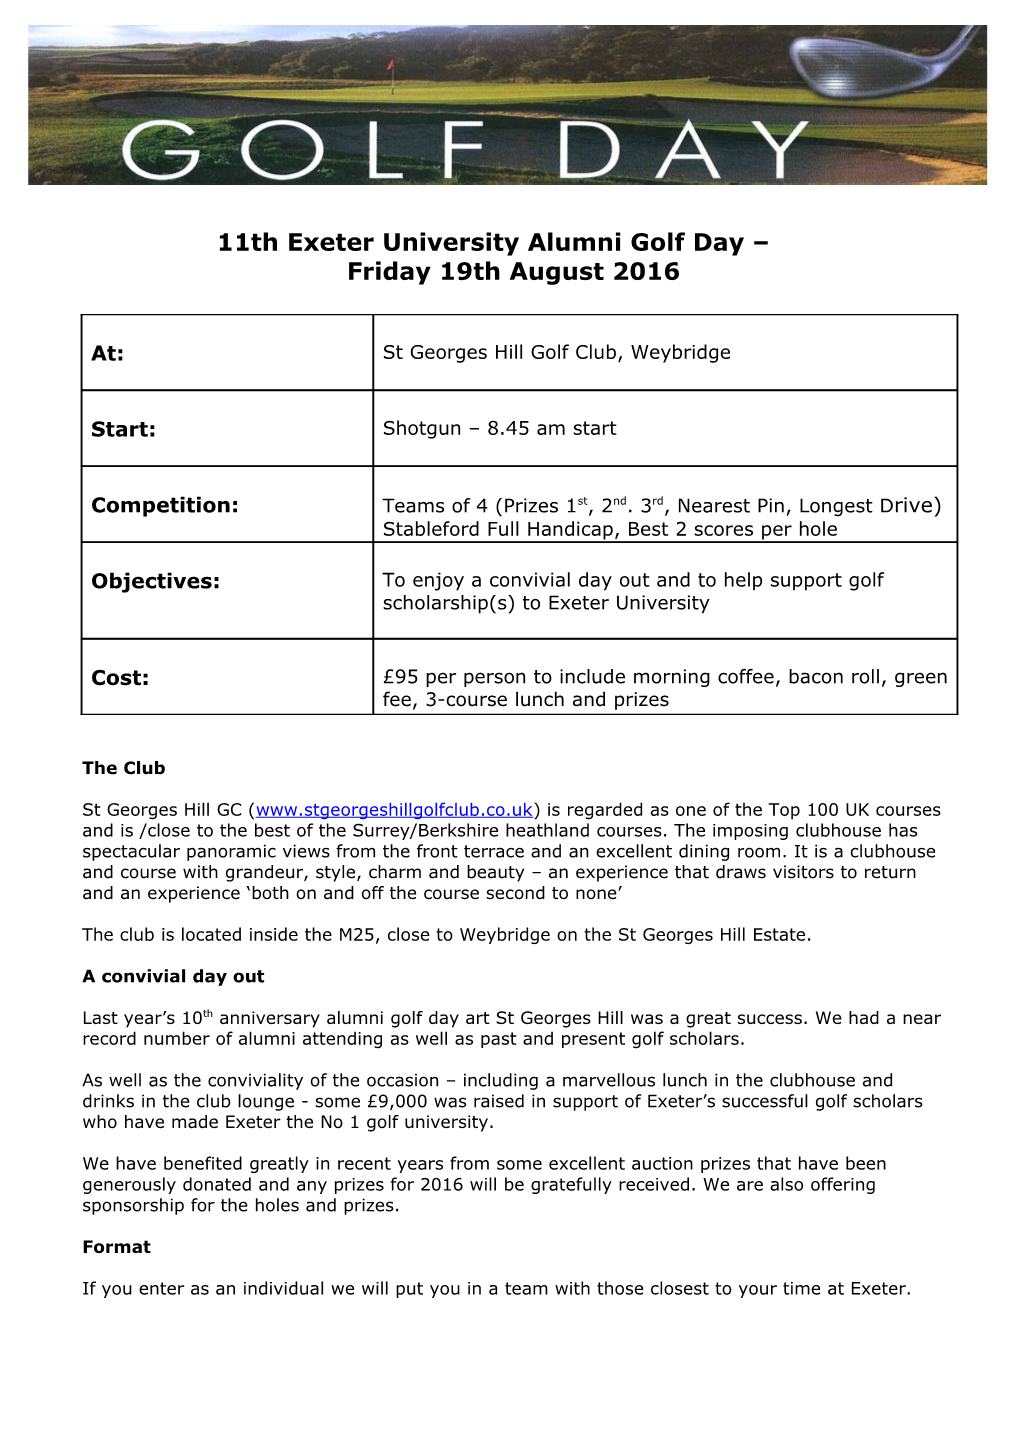 Exeter University Alumin Golf Day (London Society)